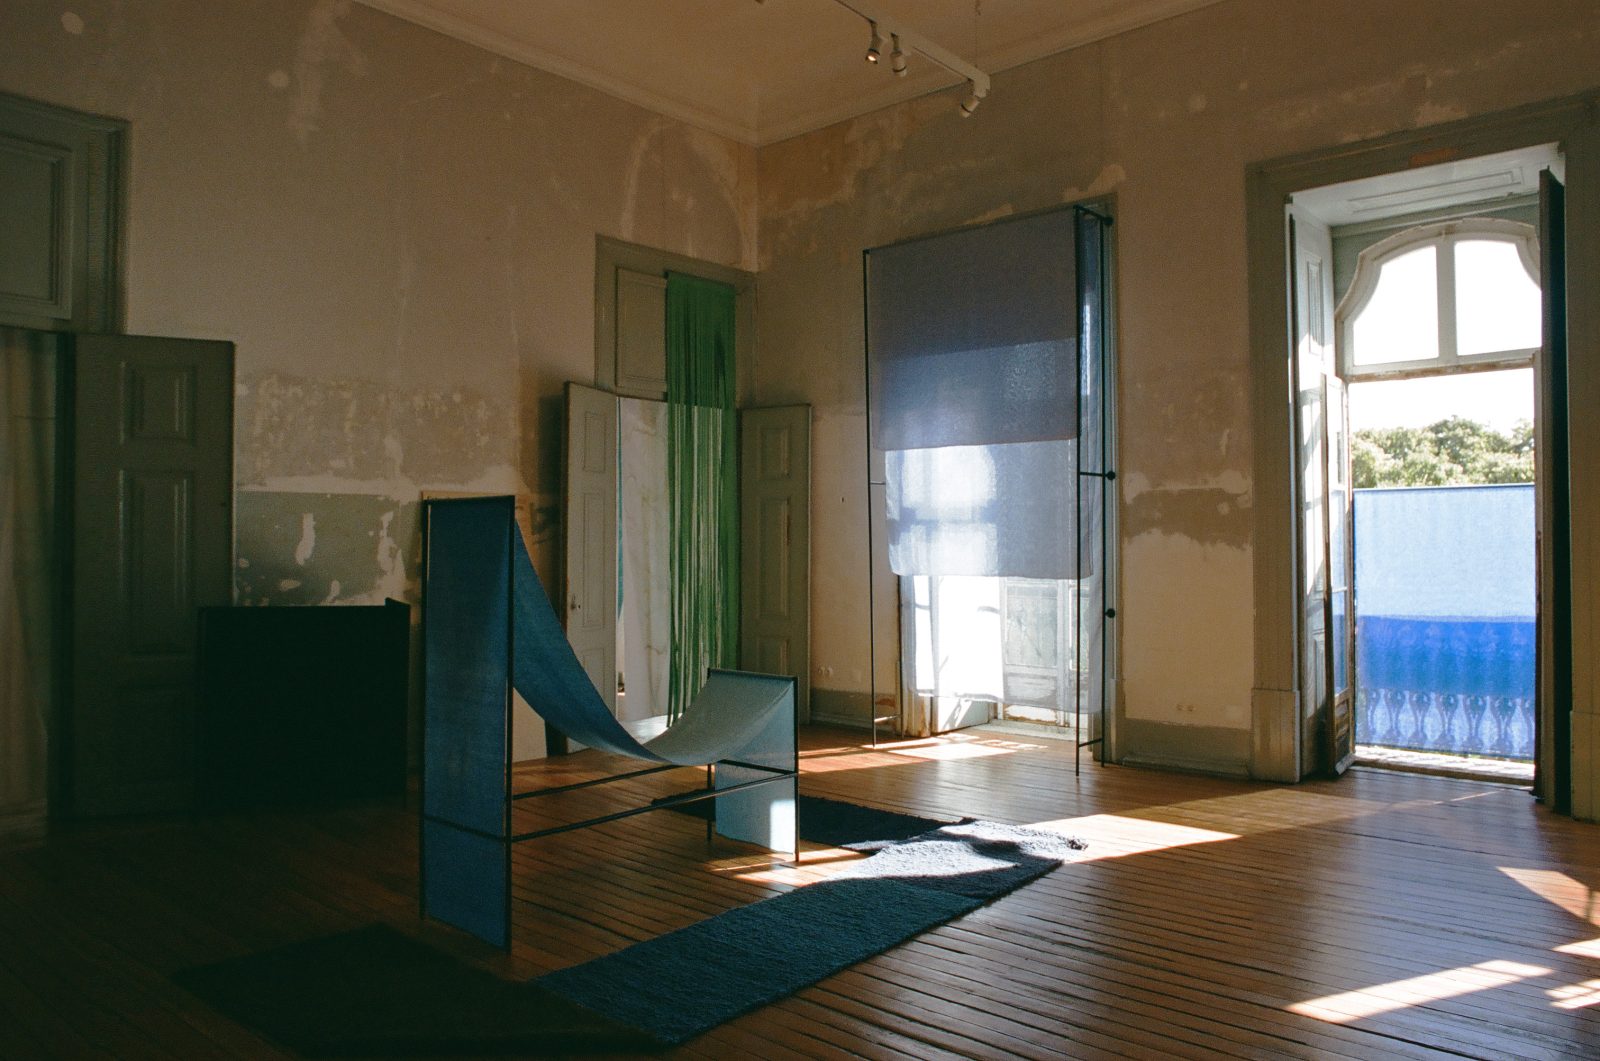 The Clothed Home, Lisbon Architecture Triennale, 2022, photo Simone De Iacobis